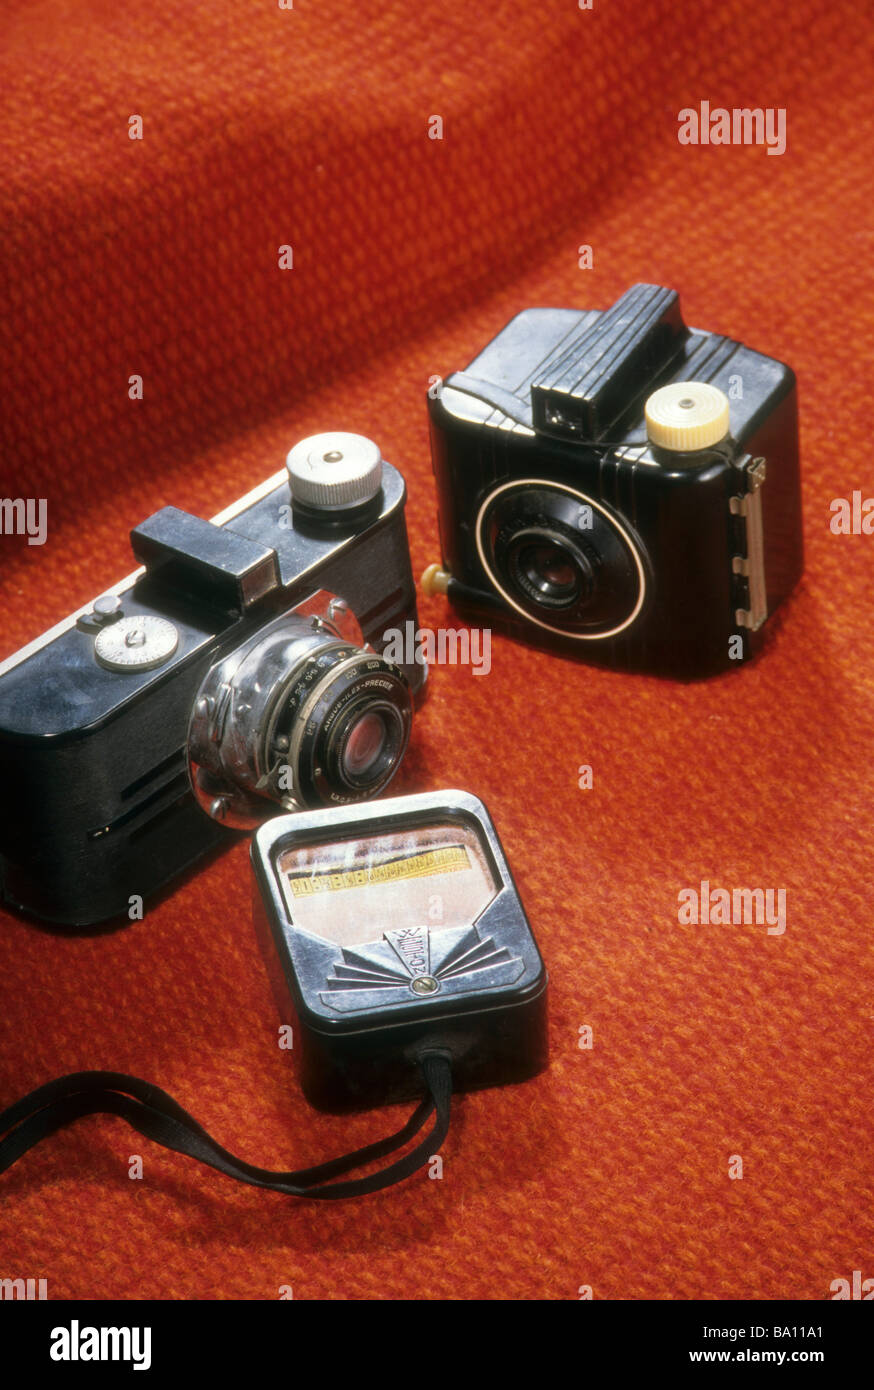 Vecchia fotocamera da collezione Kodak argus C-1 esposimetro attrezzatura fotografica film antico hobby Foto Stock